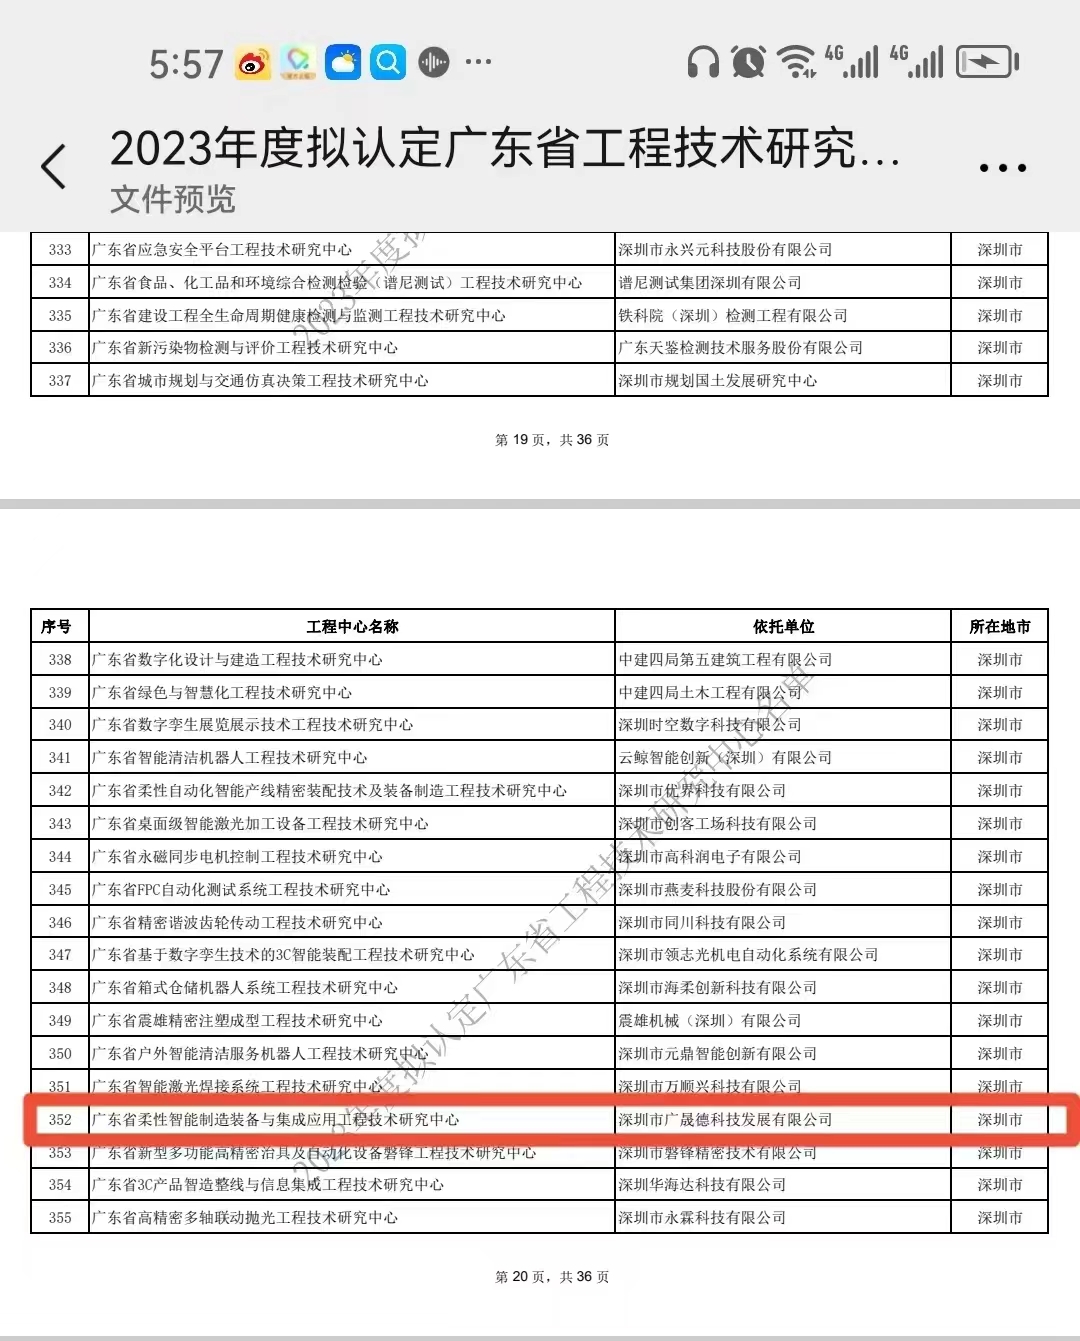 佛山蓝冠注册荣获2023年度广东省工程技术研究中心认定